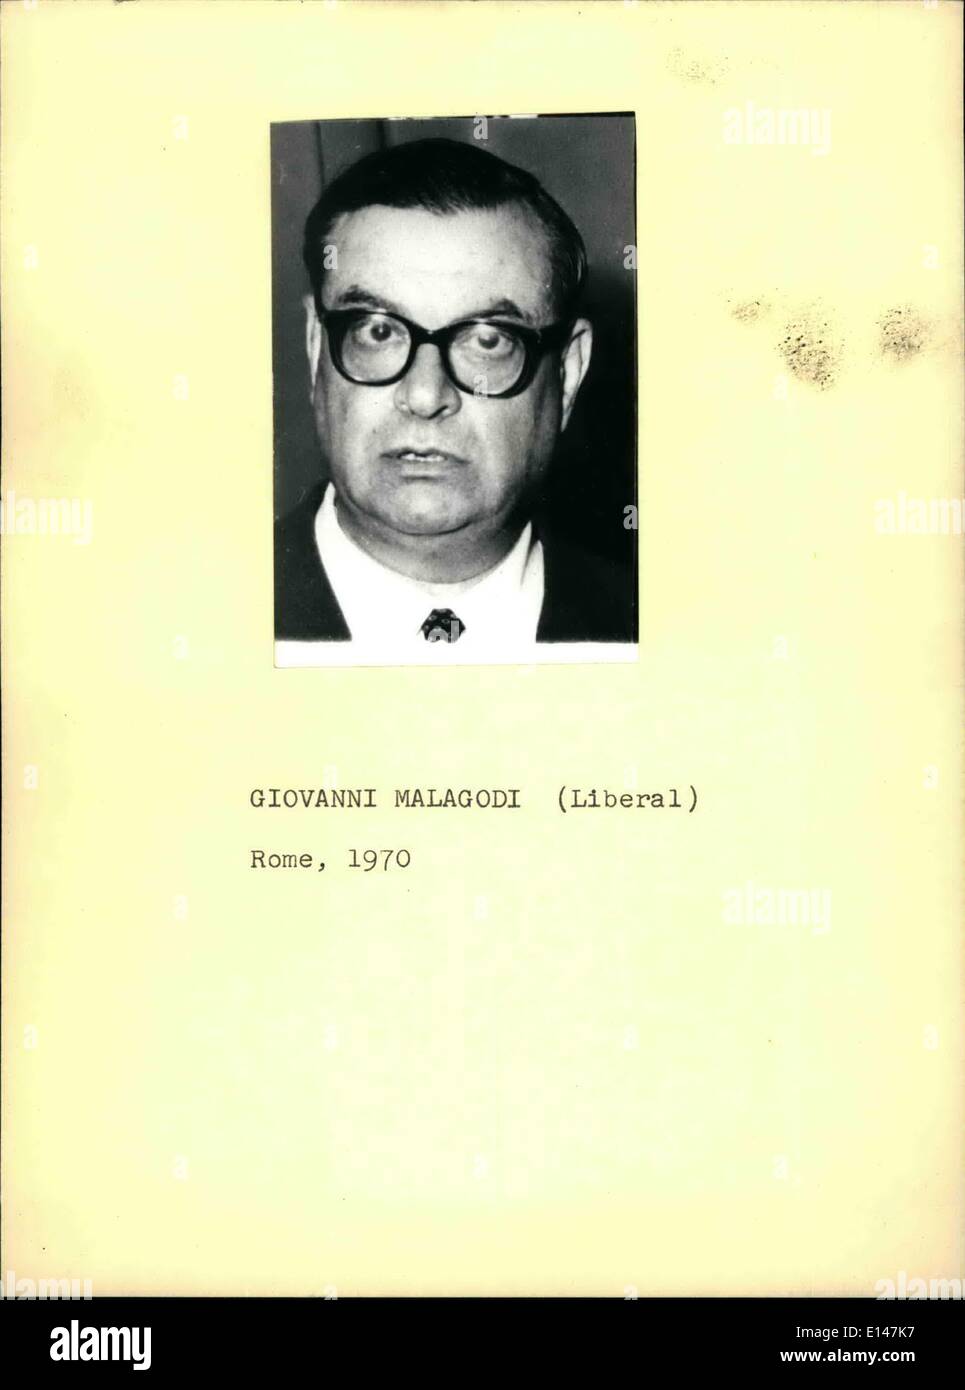 Apr. 16, 2012 - Giovanni Malagodi (Liberal) Stock Photo